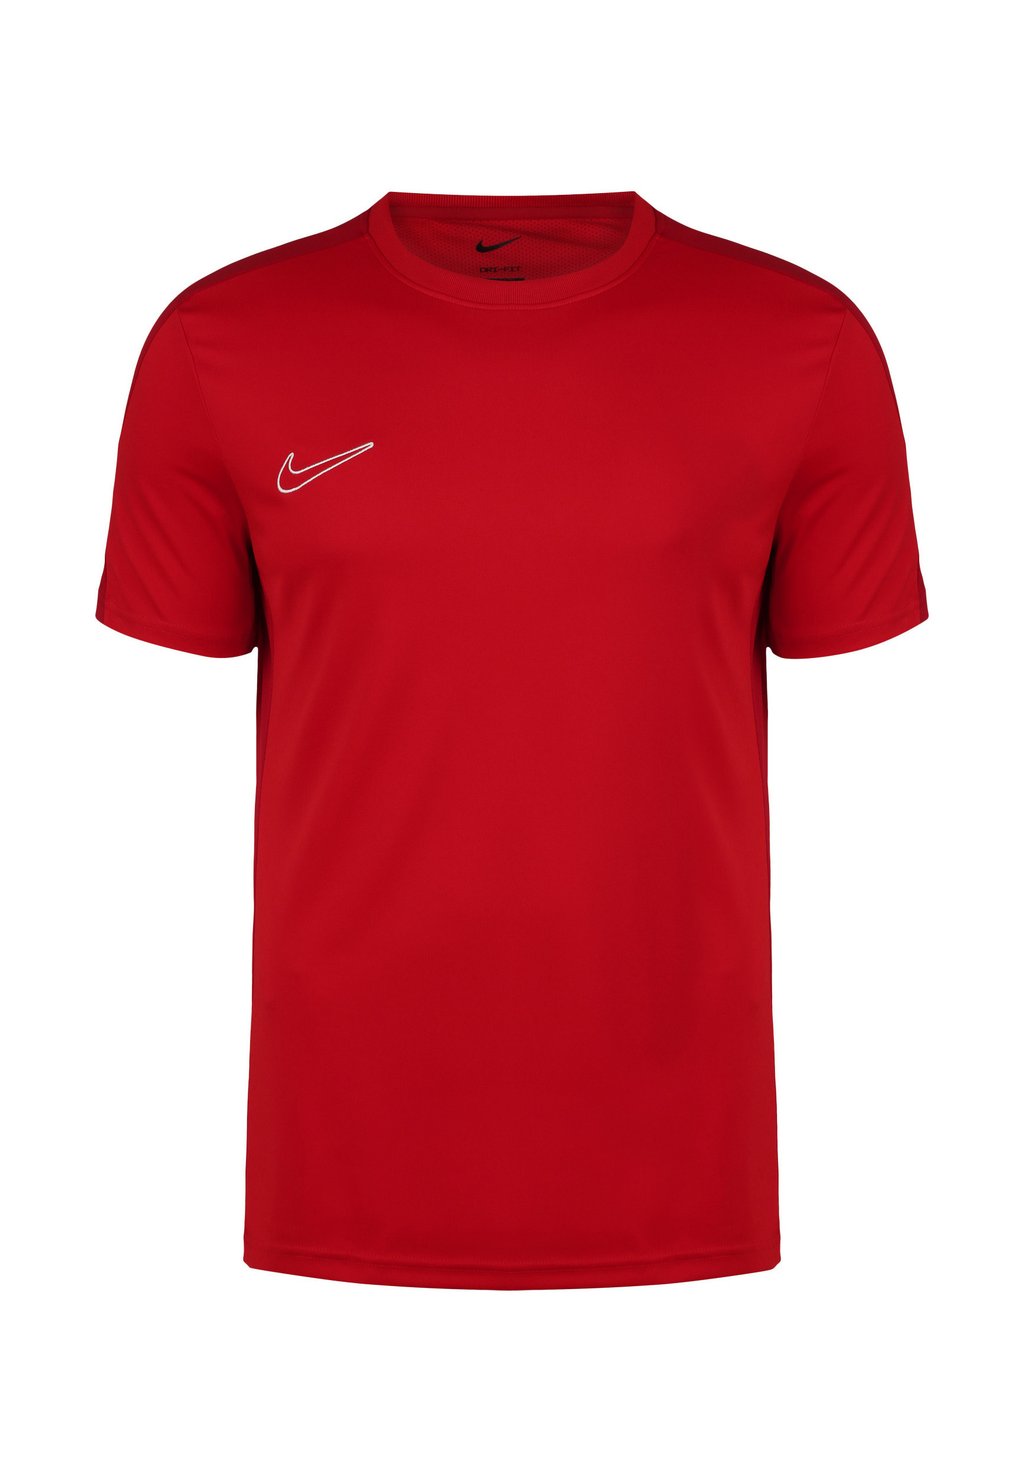 Спортивная футболка DRI-FIT ACADEMY 23 Nike, цвет university red gym red white шорты nike woven hbr shorts цвет university red gym red white